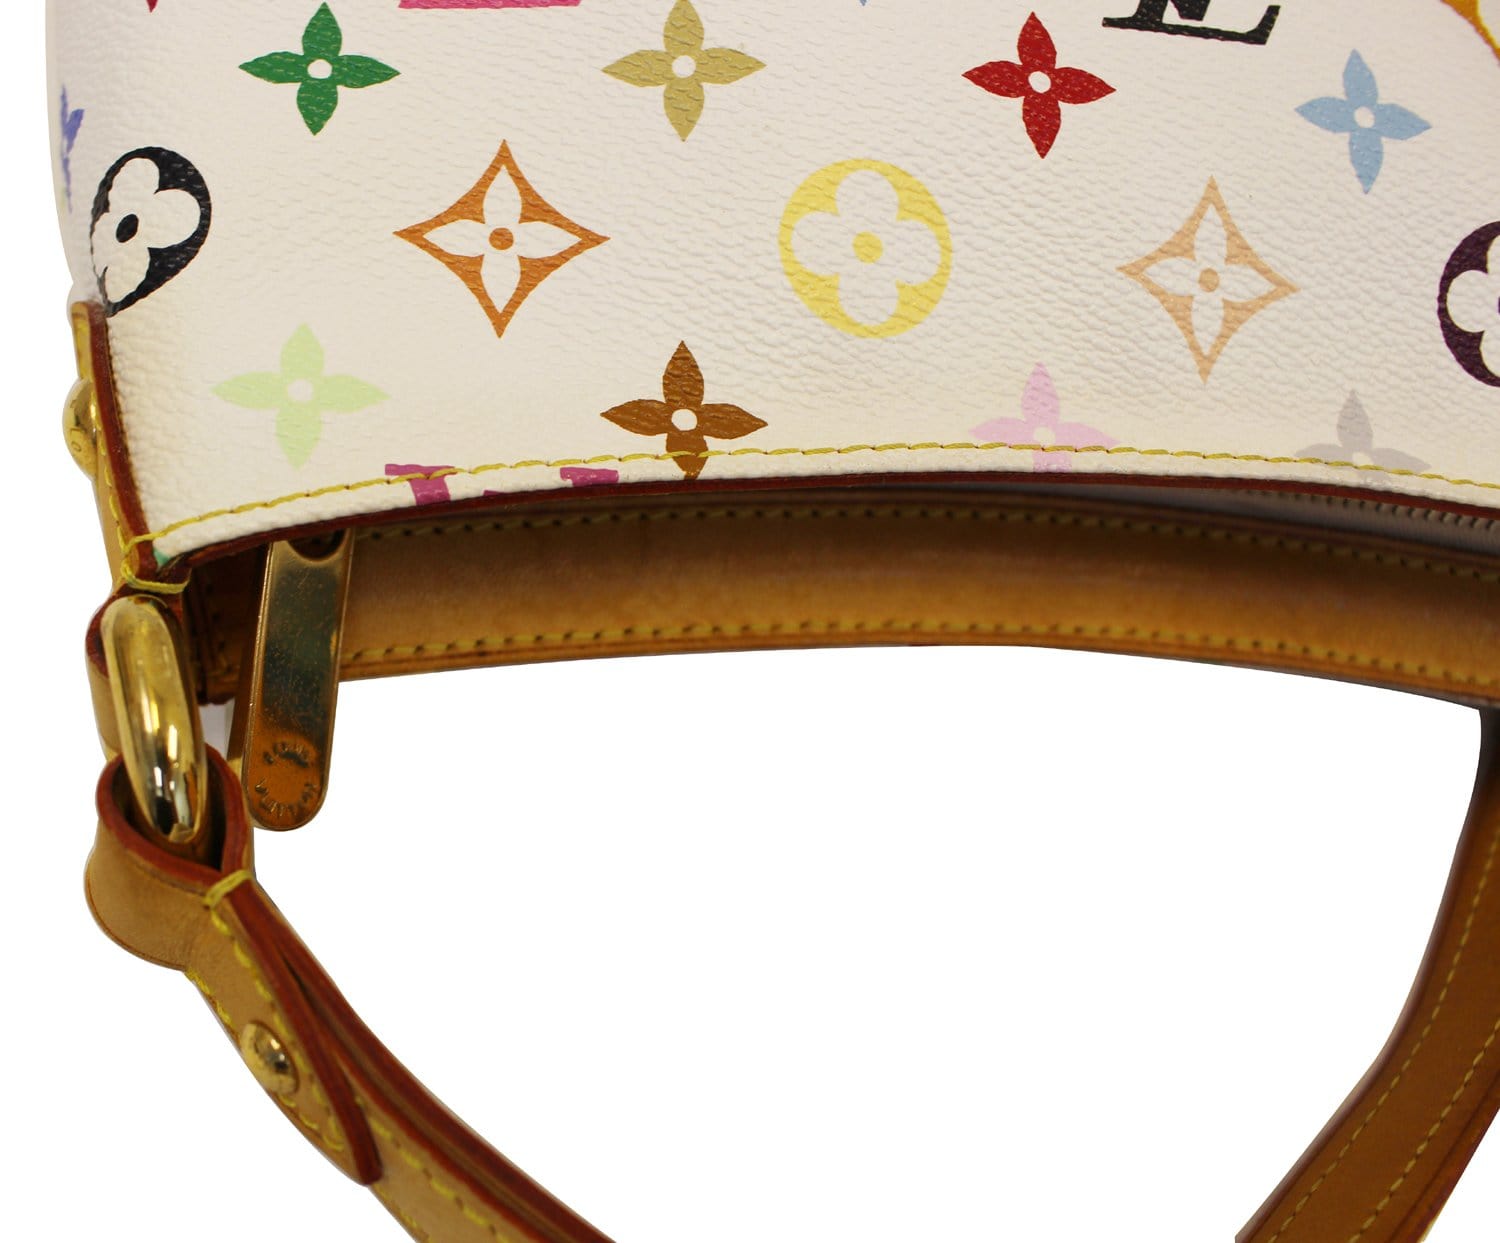 Louis Vuitton Monogram Multicolor Pouchette Shoulder Bag – TBC Consignment